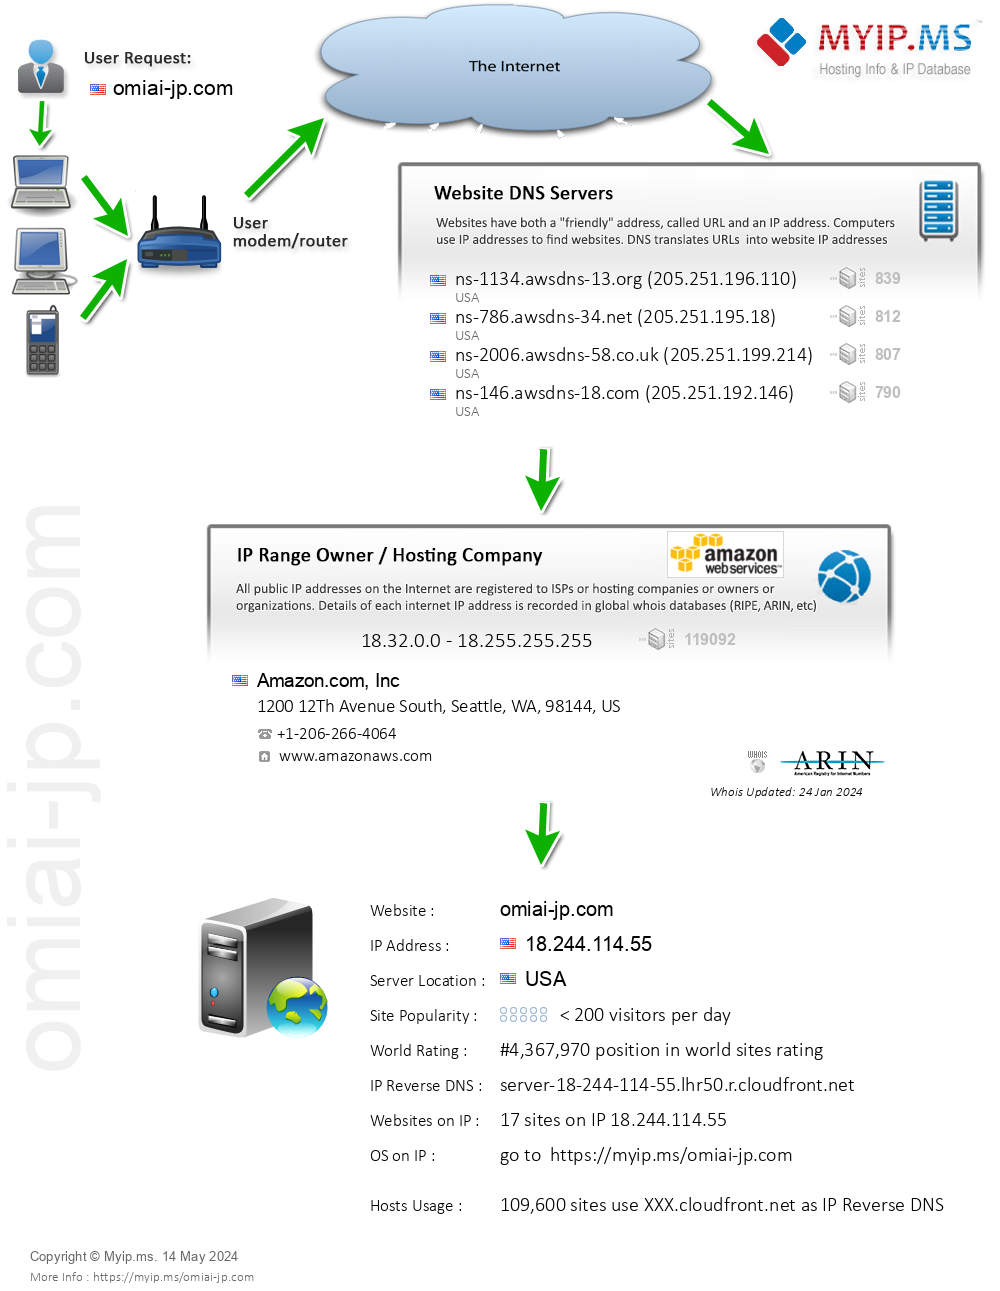 Omiai-jp.com - Website Hosting Visual IP Diagram